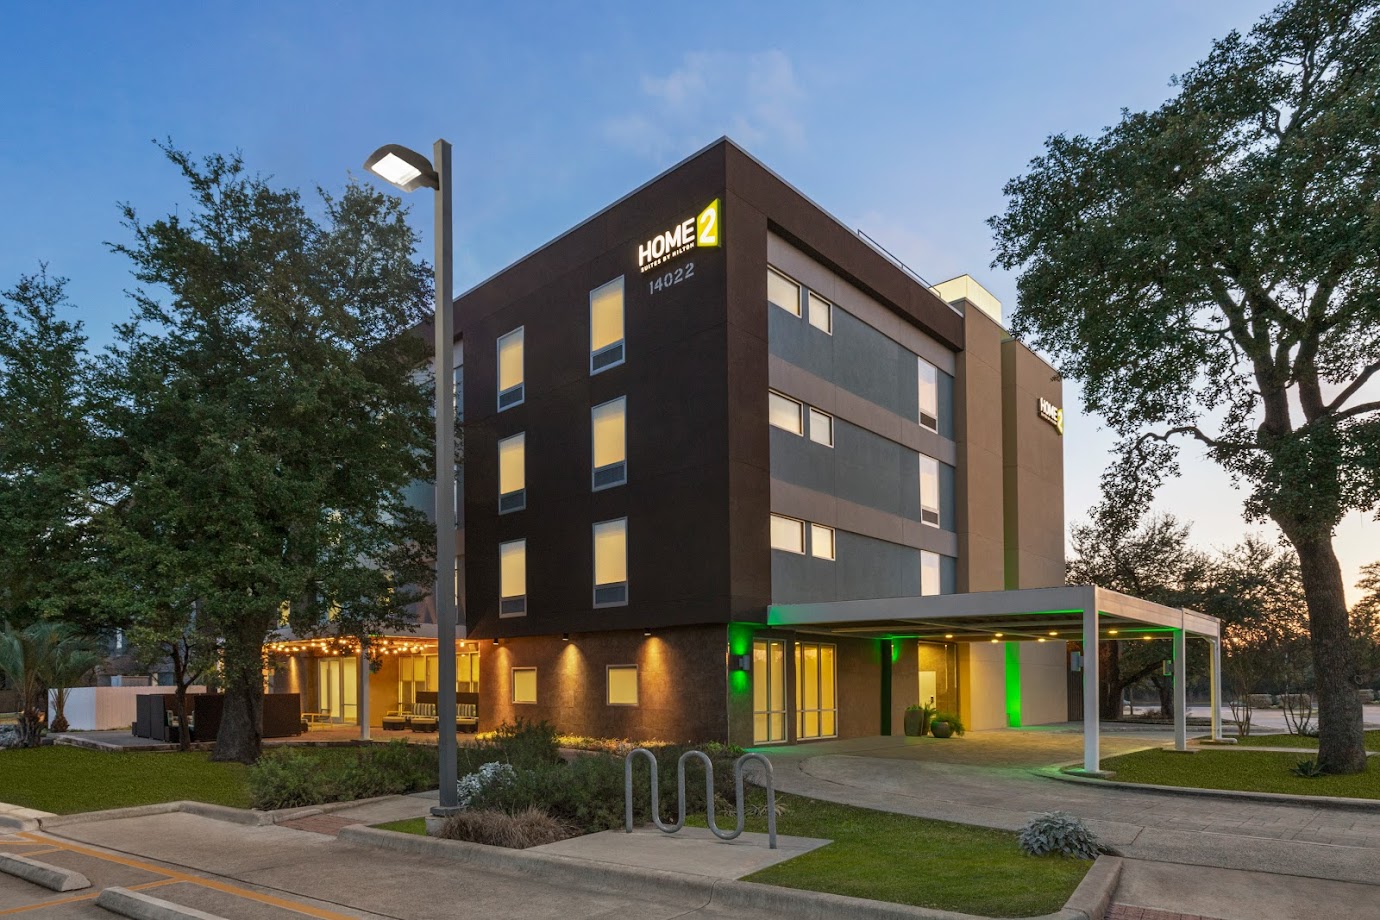 Home2 Suites by Hilton Austin/Cedar Park, TX